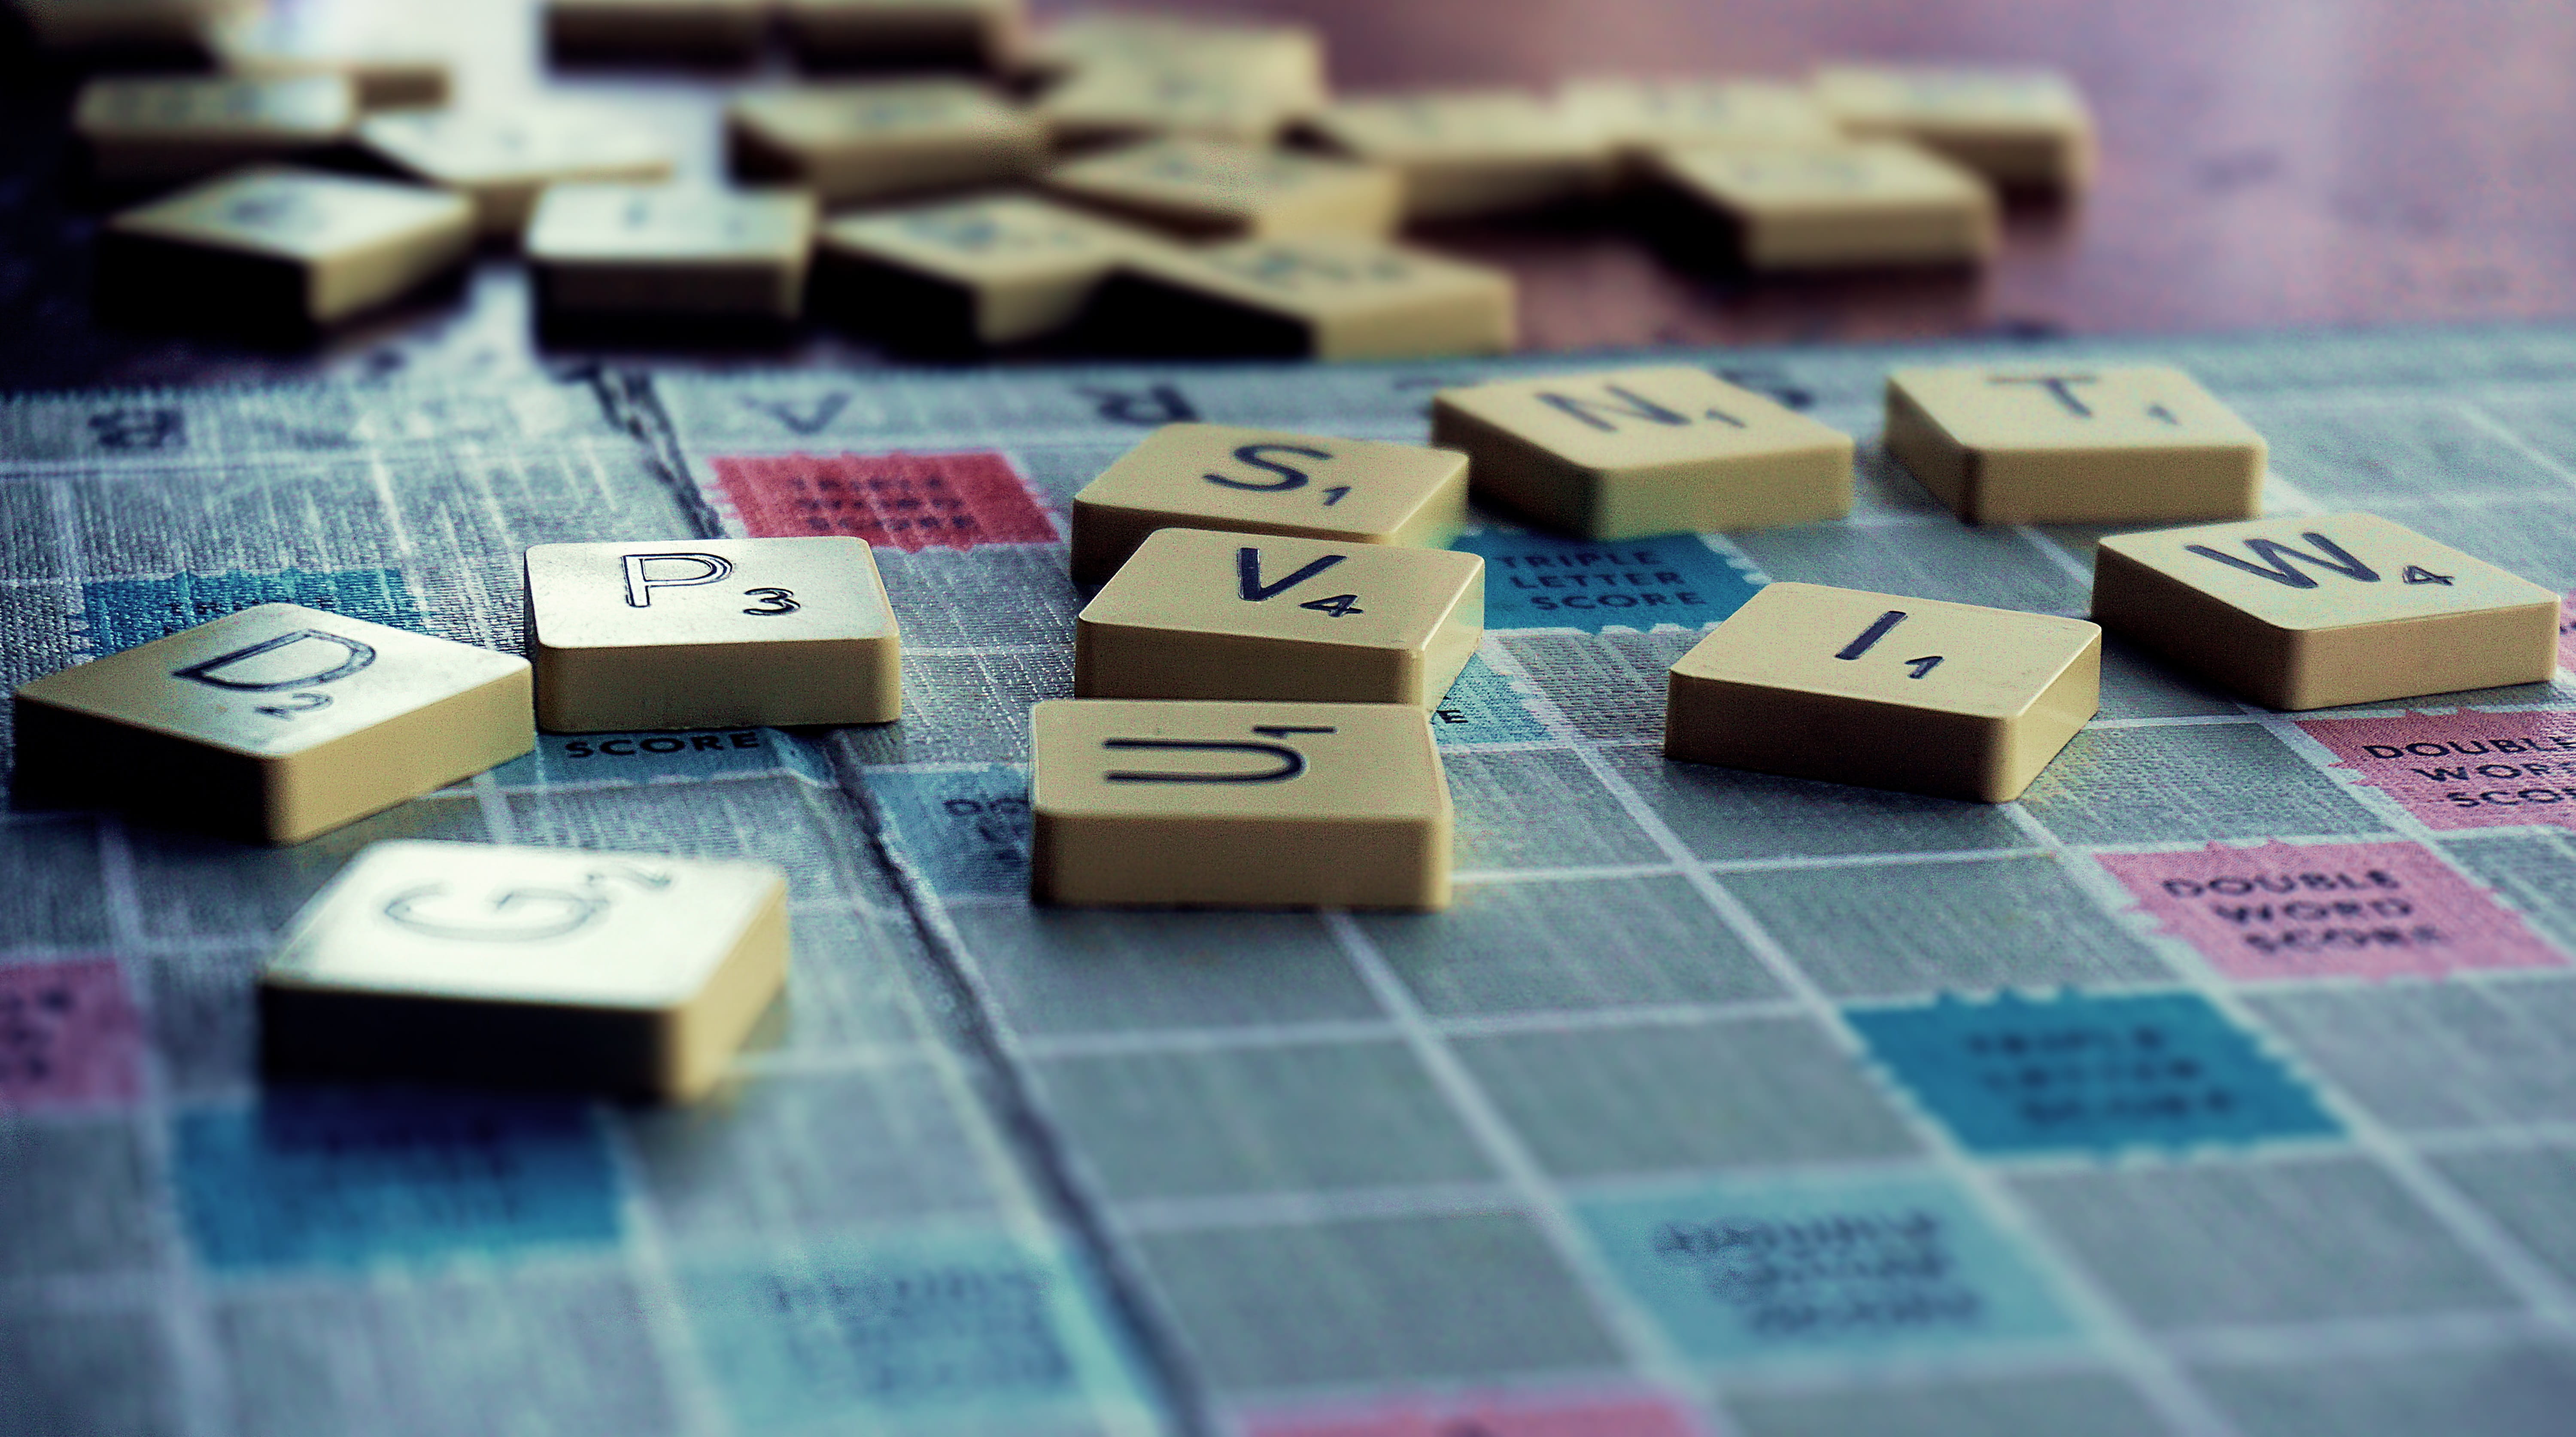 os melhores jogos de tabuleiro para dois jogadores - um tabuleiro de Scrabble com uma variedade aleatória de peças de perto